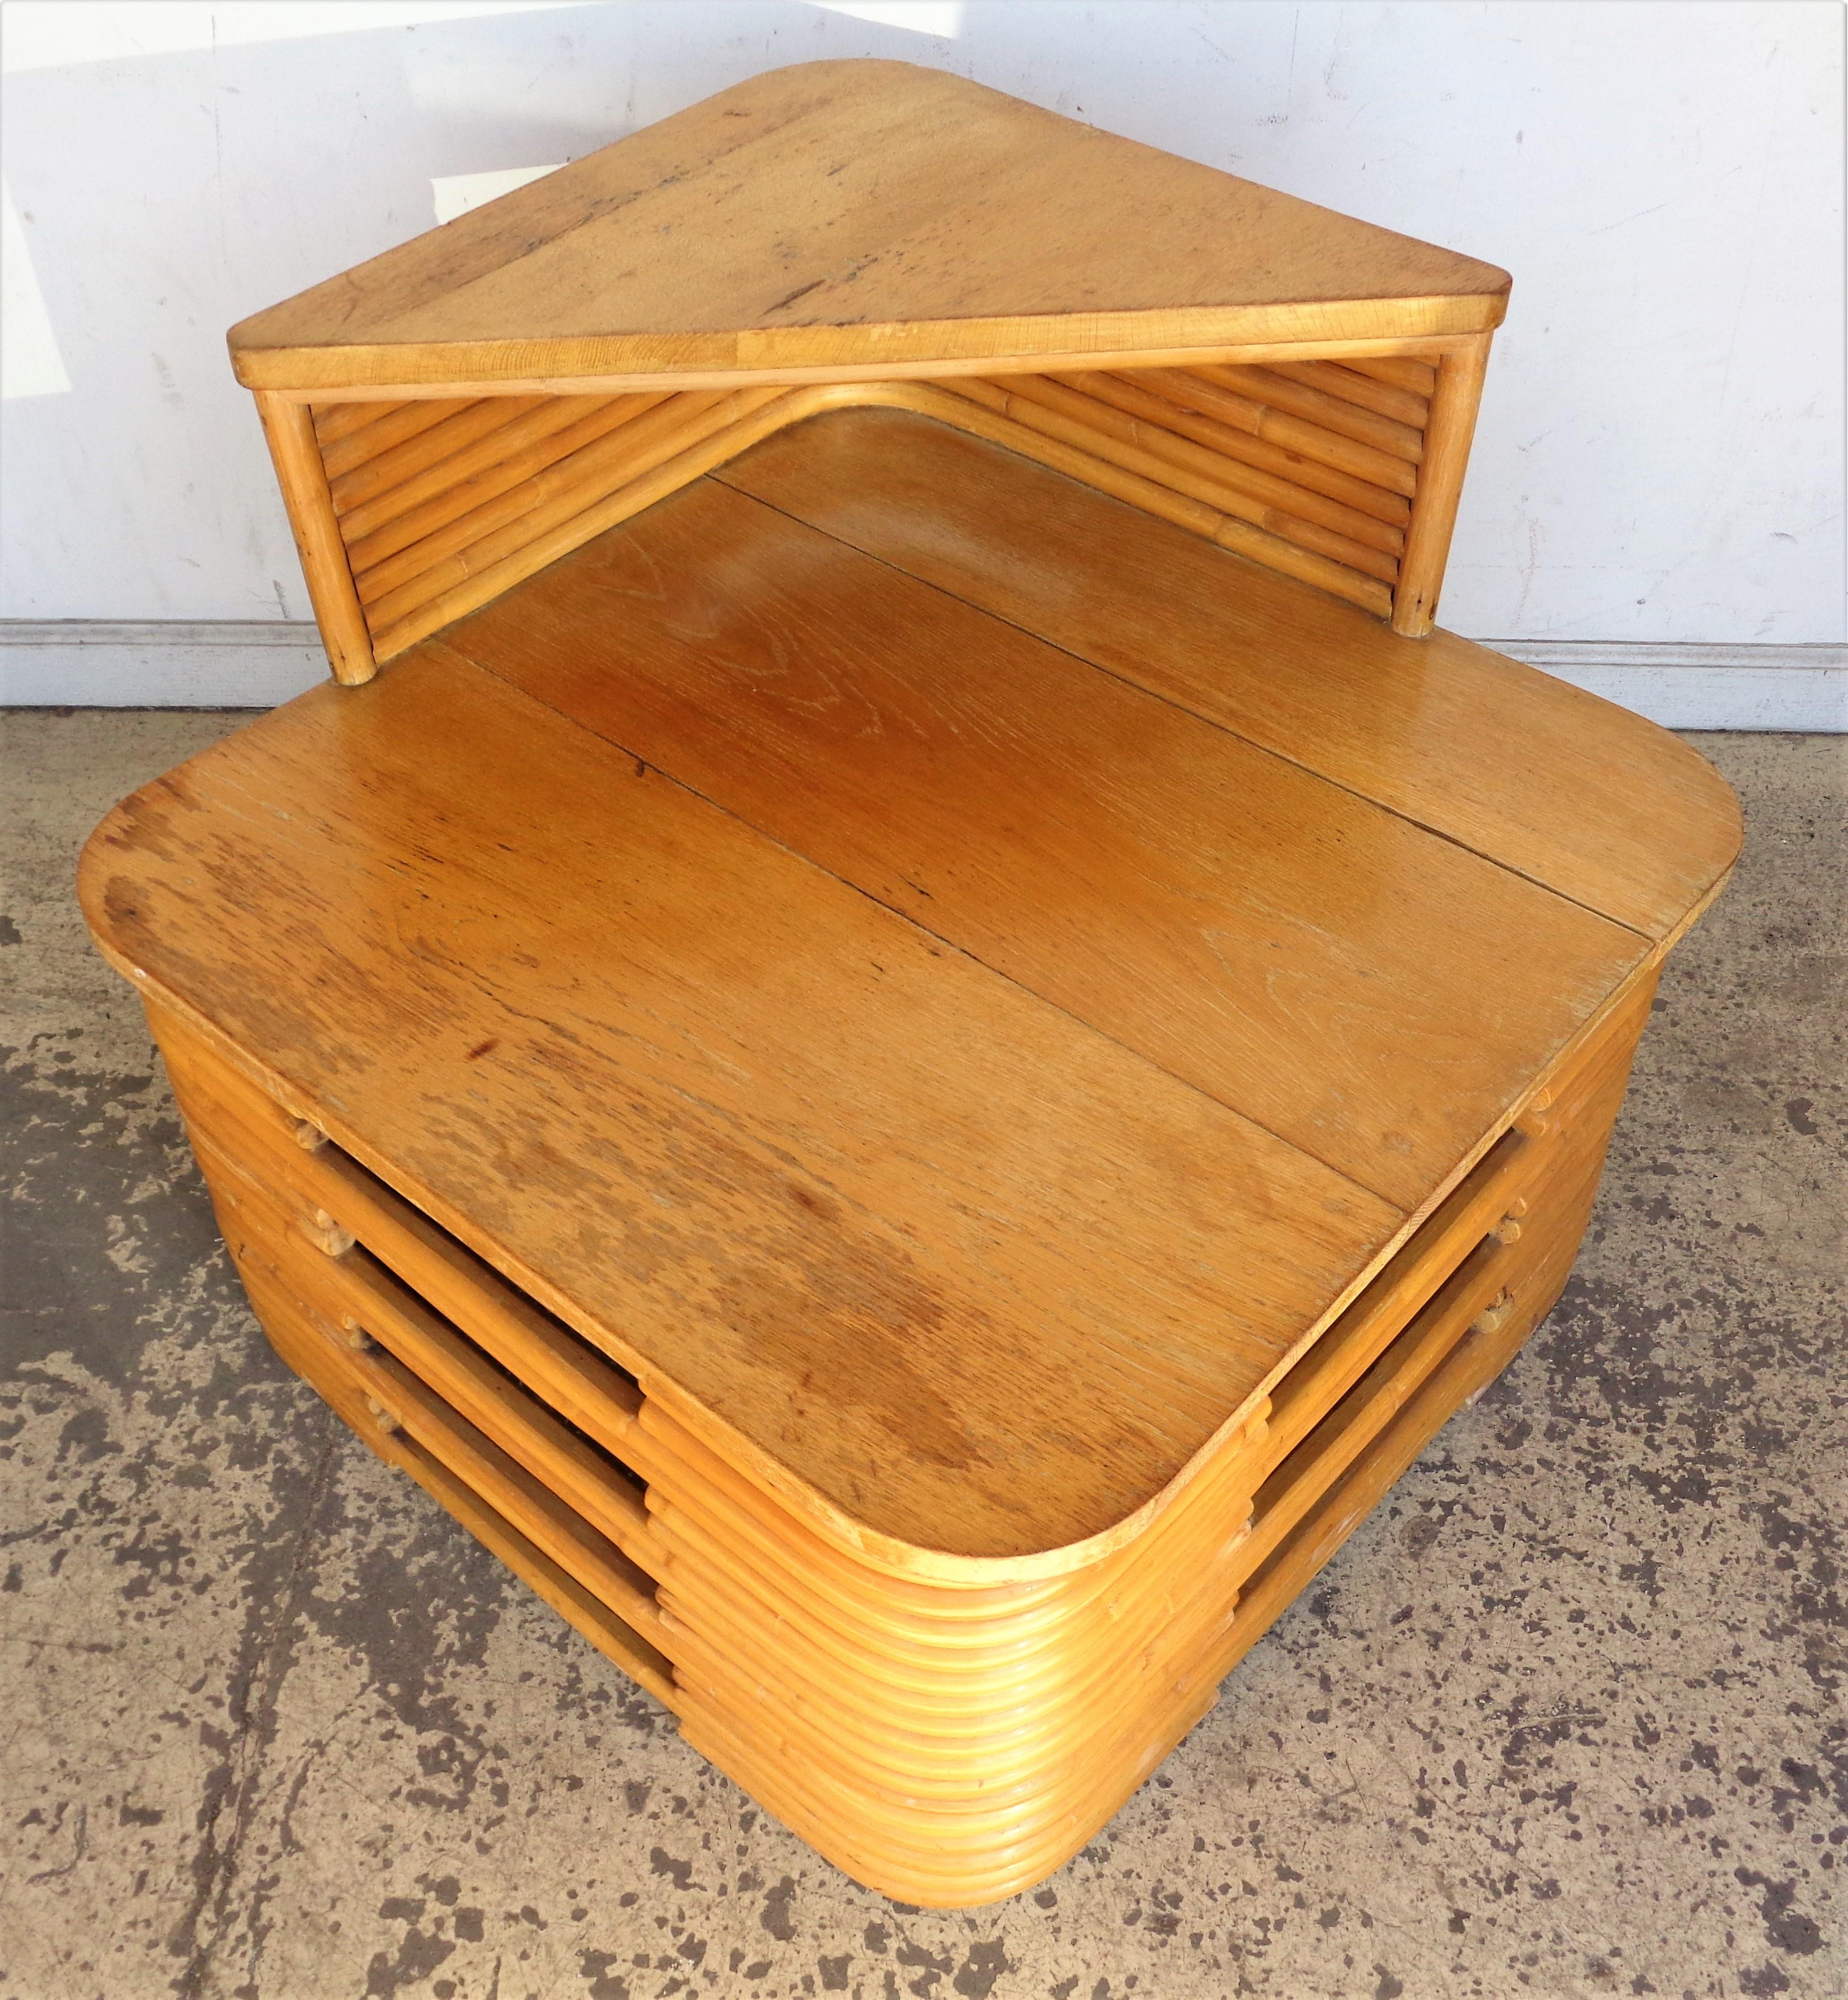 Table d'angle / table d'appoint empilée en rotin et chêne à deux niveaux ( peut être utilisée entre deux chaises ) en rotin couleur miel d'origine. Design/One de Paul Frankl, fabriqué au Japon. La hauteur de l'étage supérieur en chêne est de 25